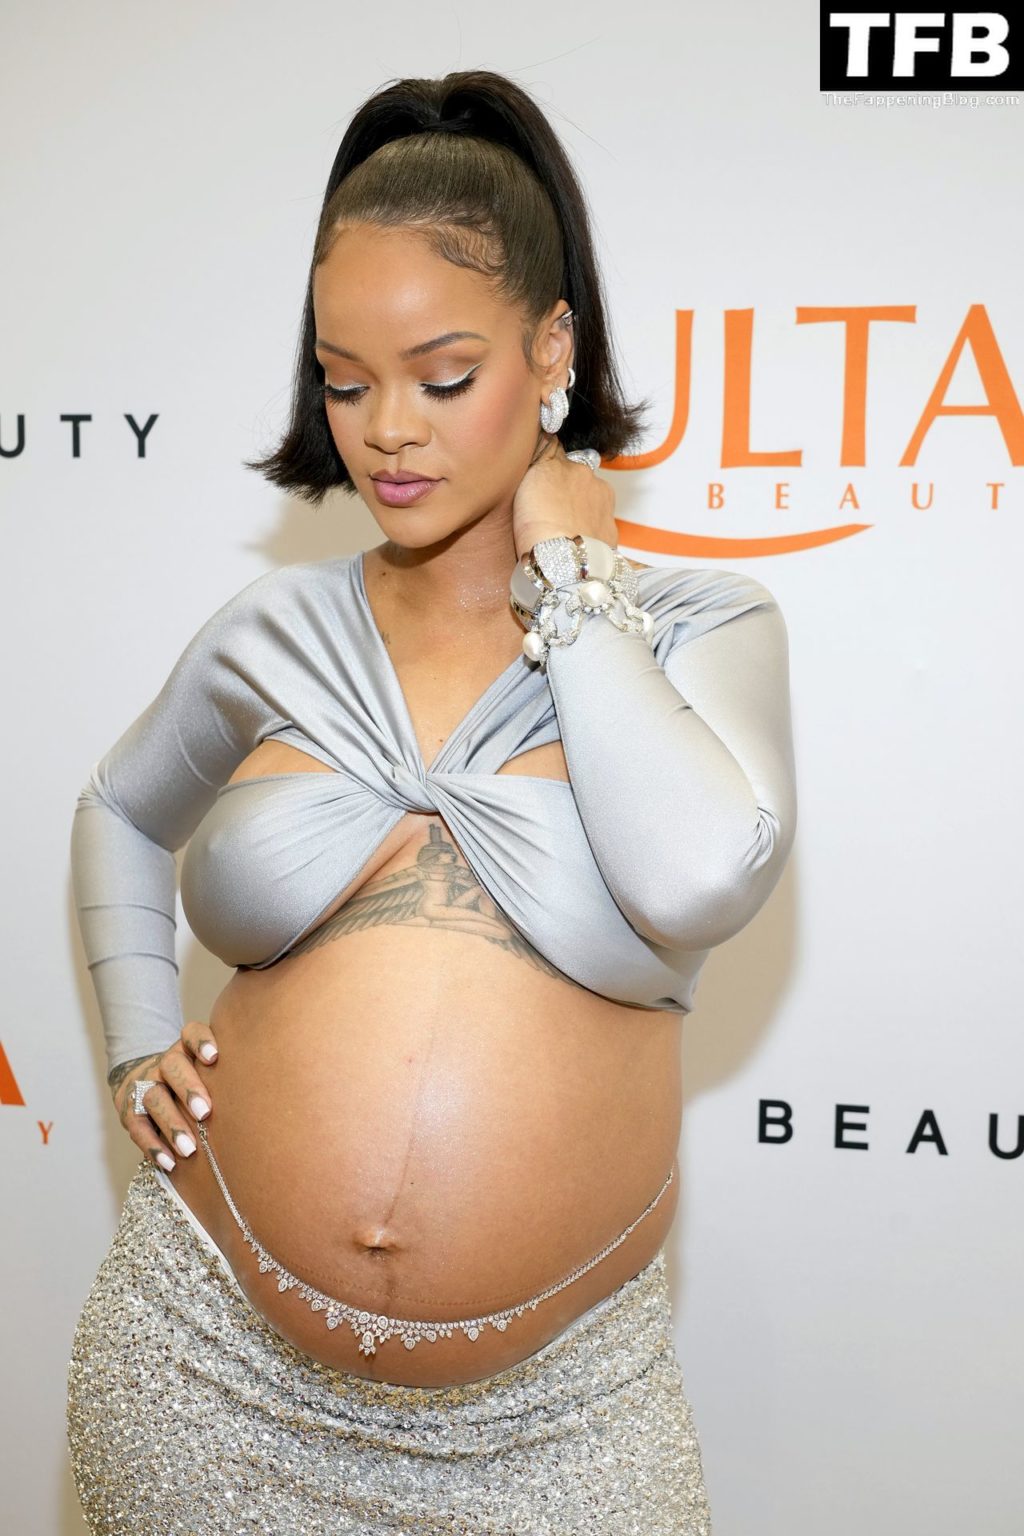 Rihanna Sexy The Fappening Blog 19 4 1024x1536 - Rihanna Celebrates the Launch of Fenty Beauty at Ulta Beauty (28 Photos)